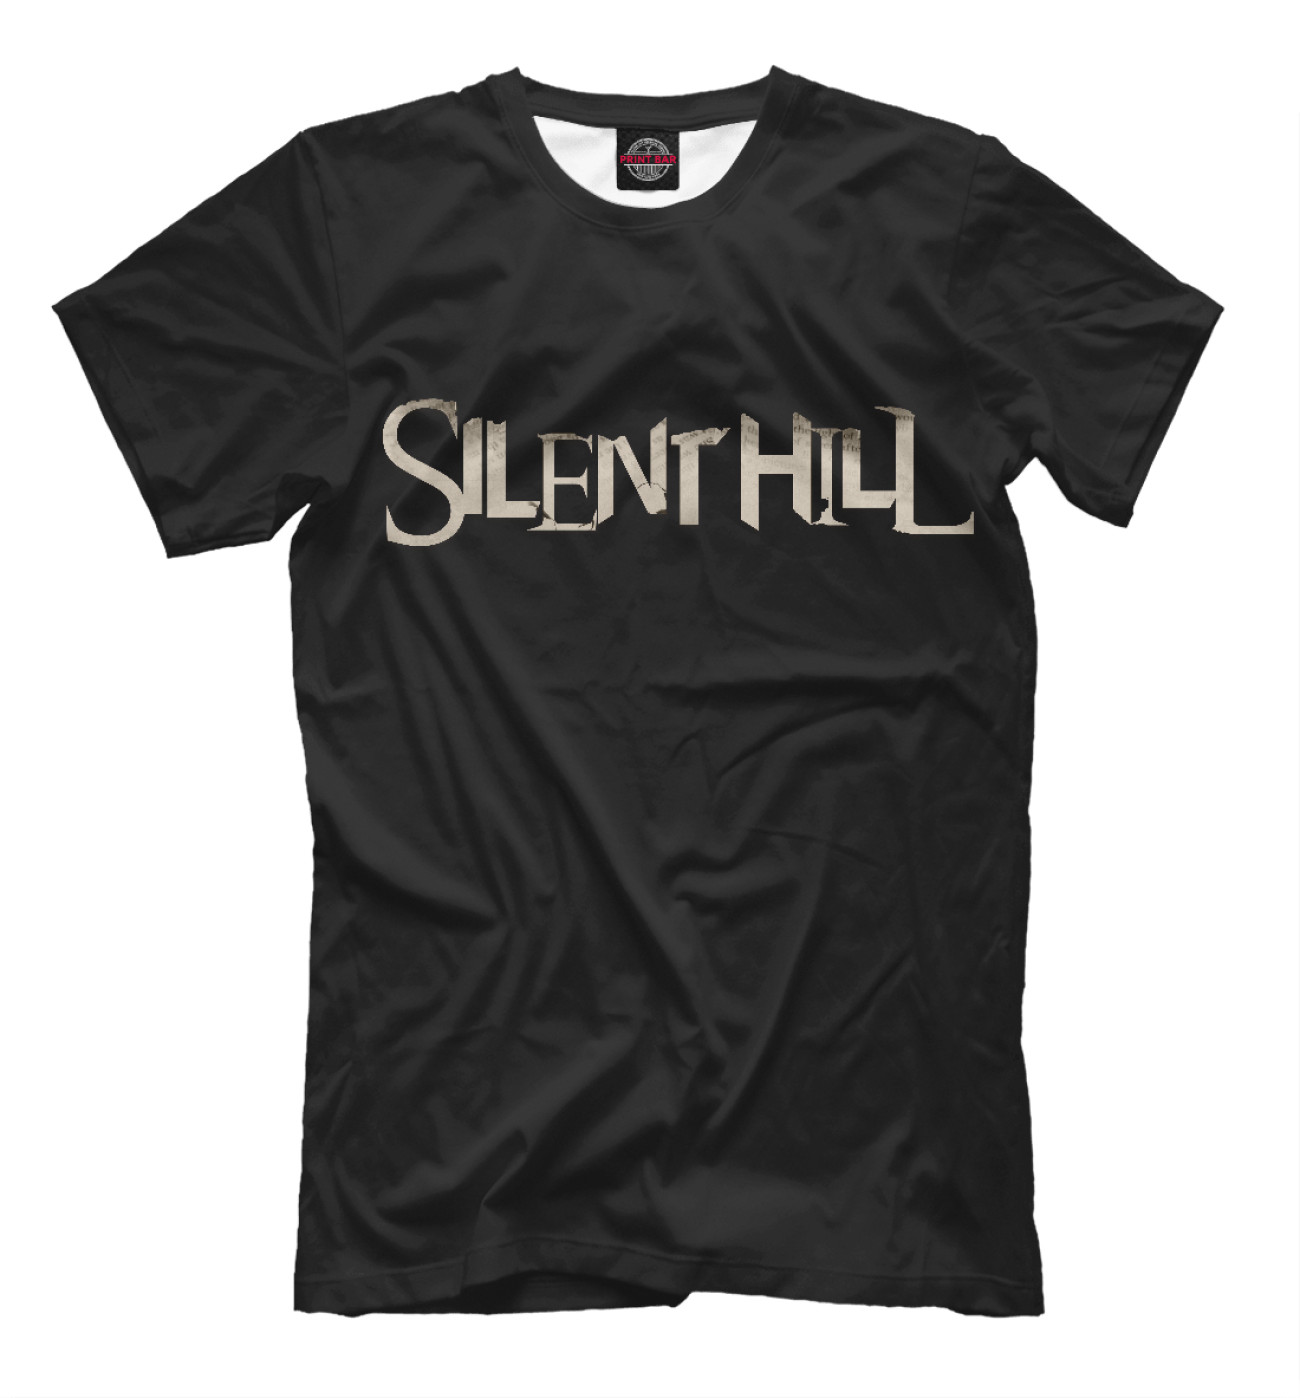 Мужская Футболка Silent Hill, артикул: SHL-297949-fut-2